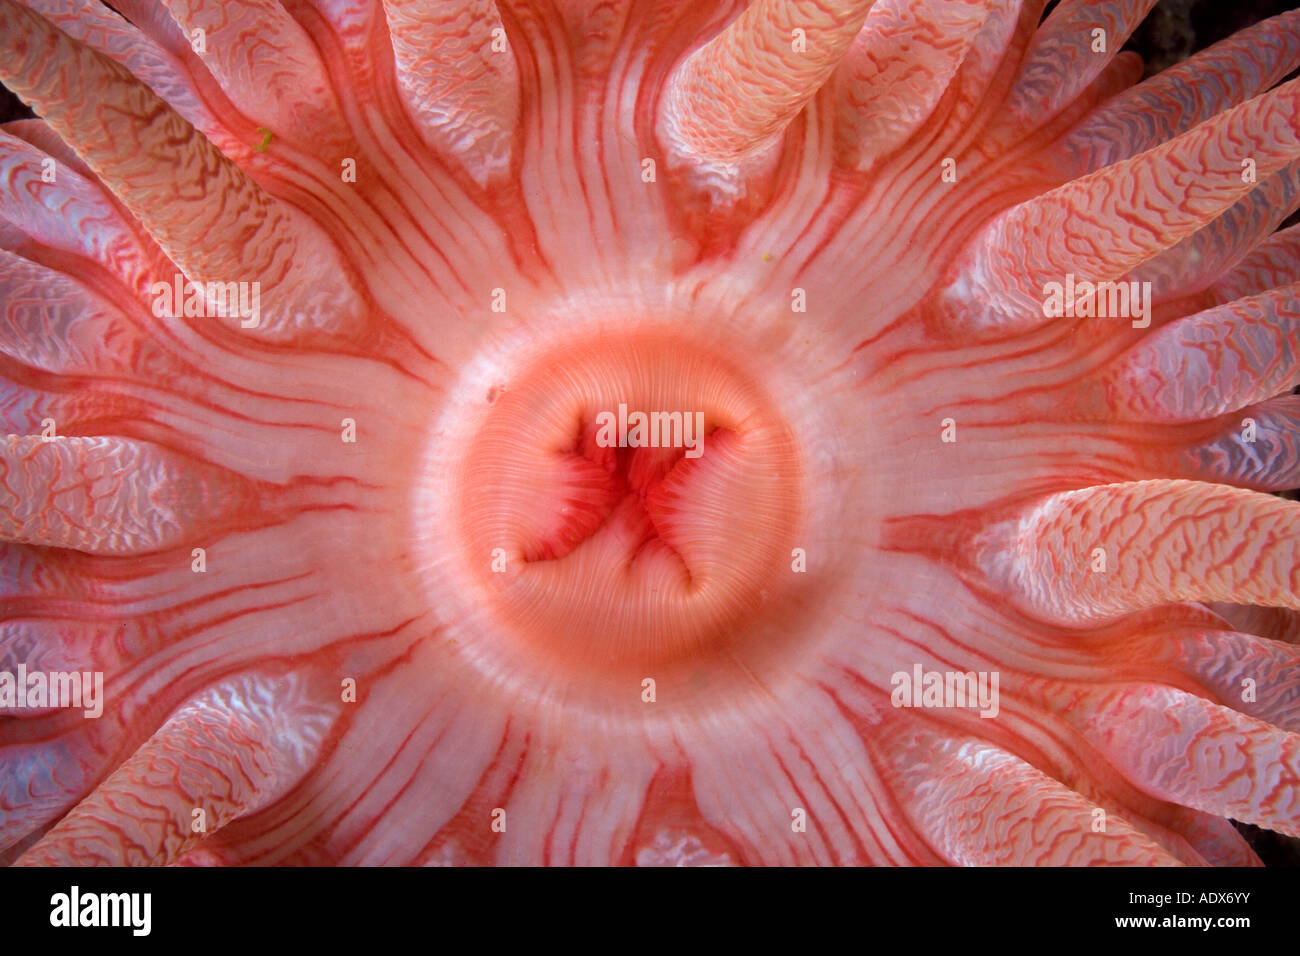 Dettaglio della bocca di un anemone cremisi Cribrinopsis fernaldi British Columbia Oceano Pacifico Canada Foto Stock